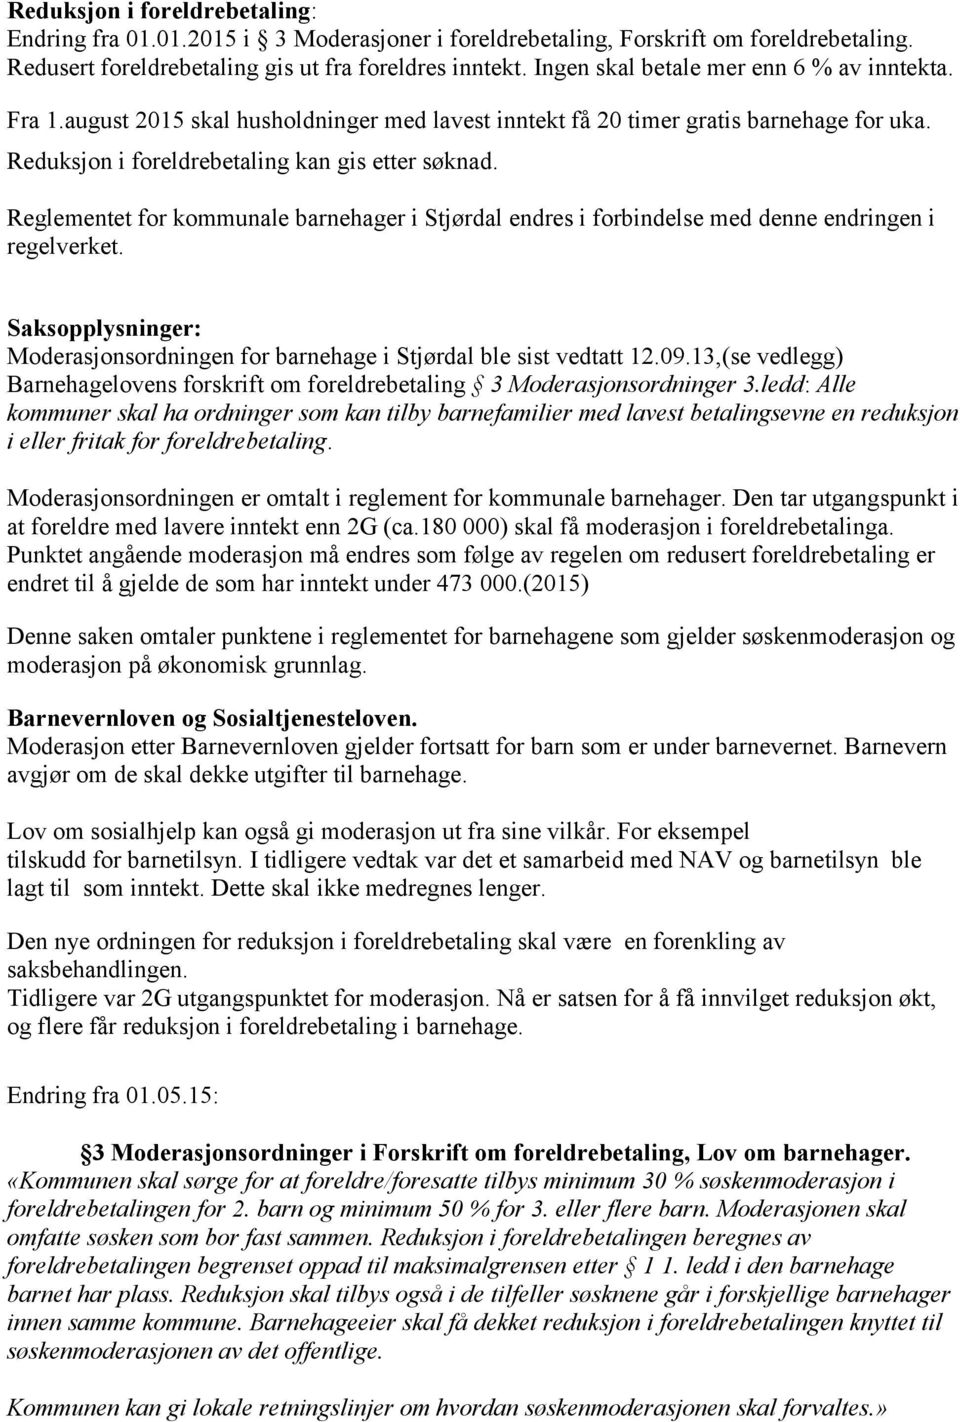 Reglementet for kommunale barnehager i Stjørdal endres i forbindelse med denne endringen i regelverket. Saksopplysninger: Moderasjonsordningen for barnehage i Stjørdal ble sist vedtatt 12.09.